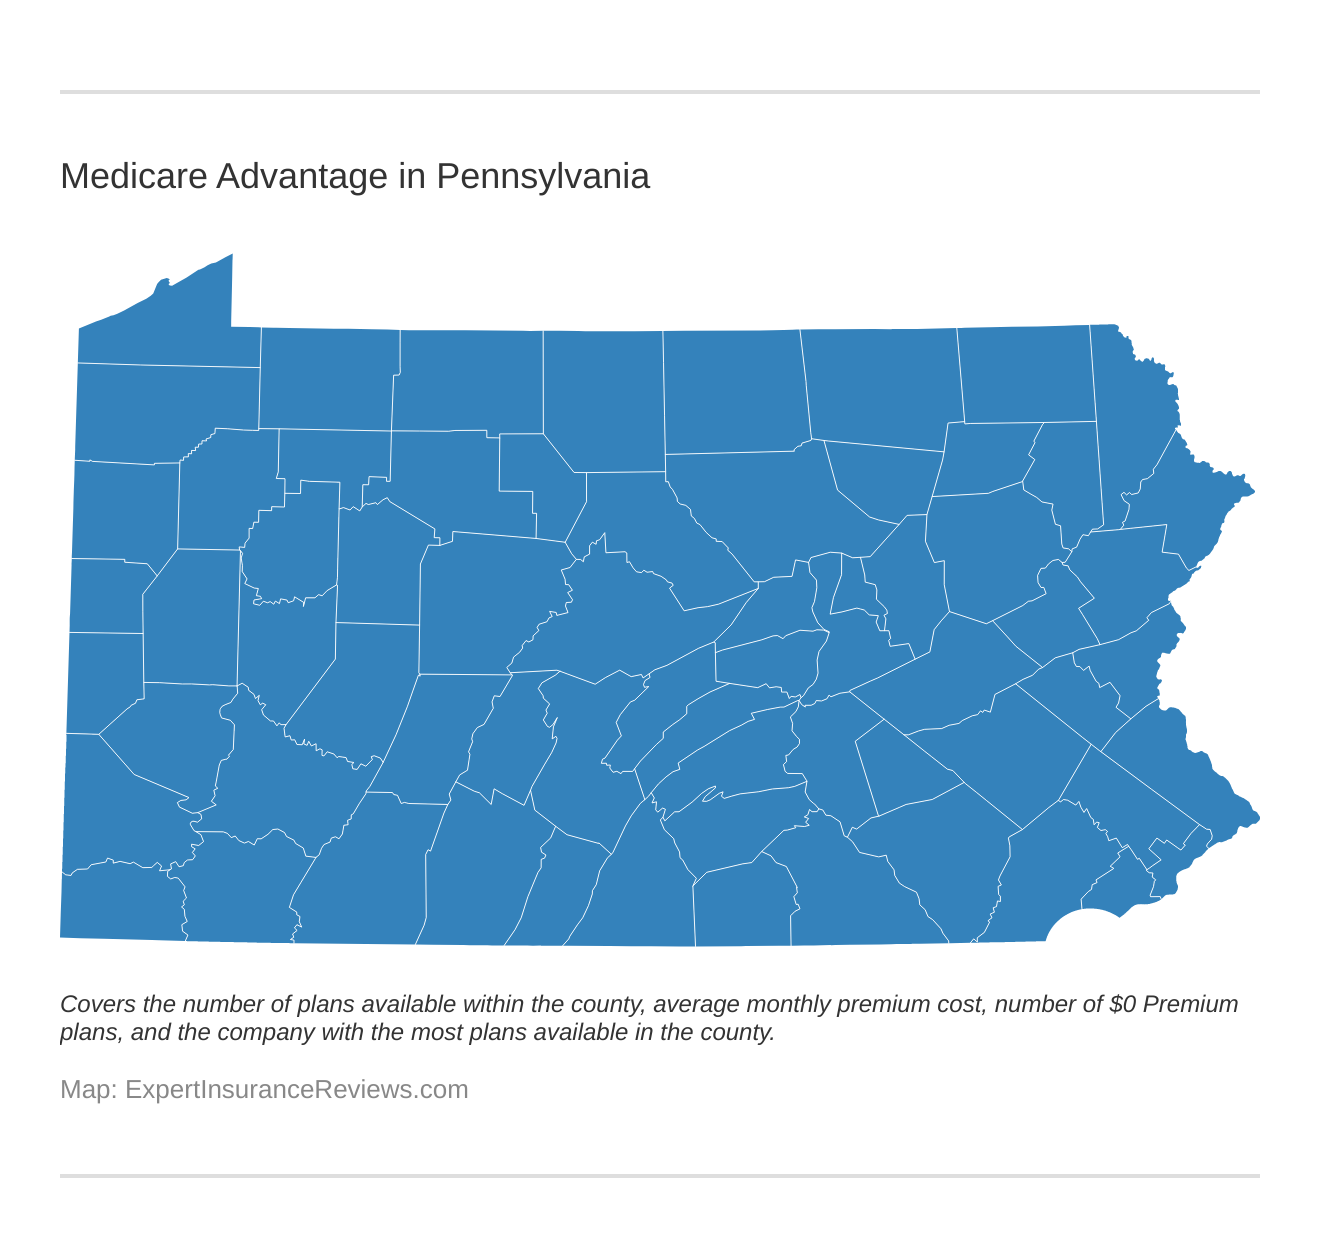 Medicare Advantage in Pennsylvania